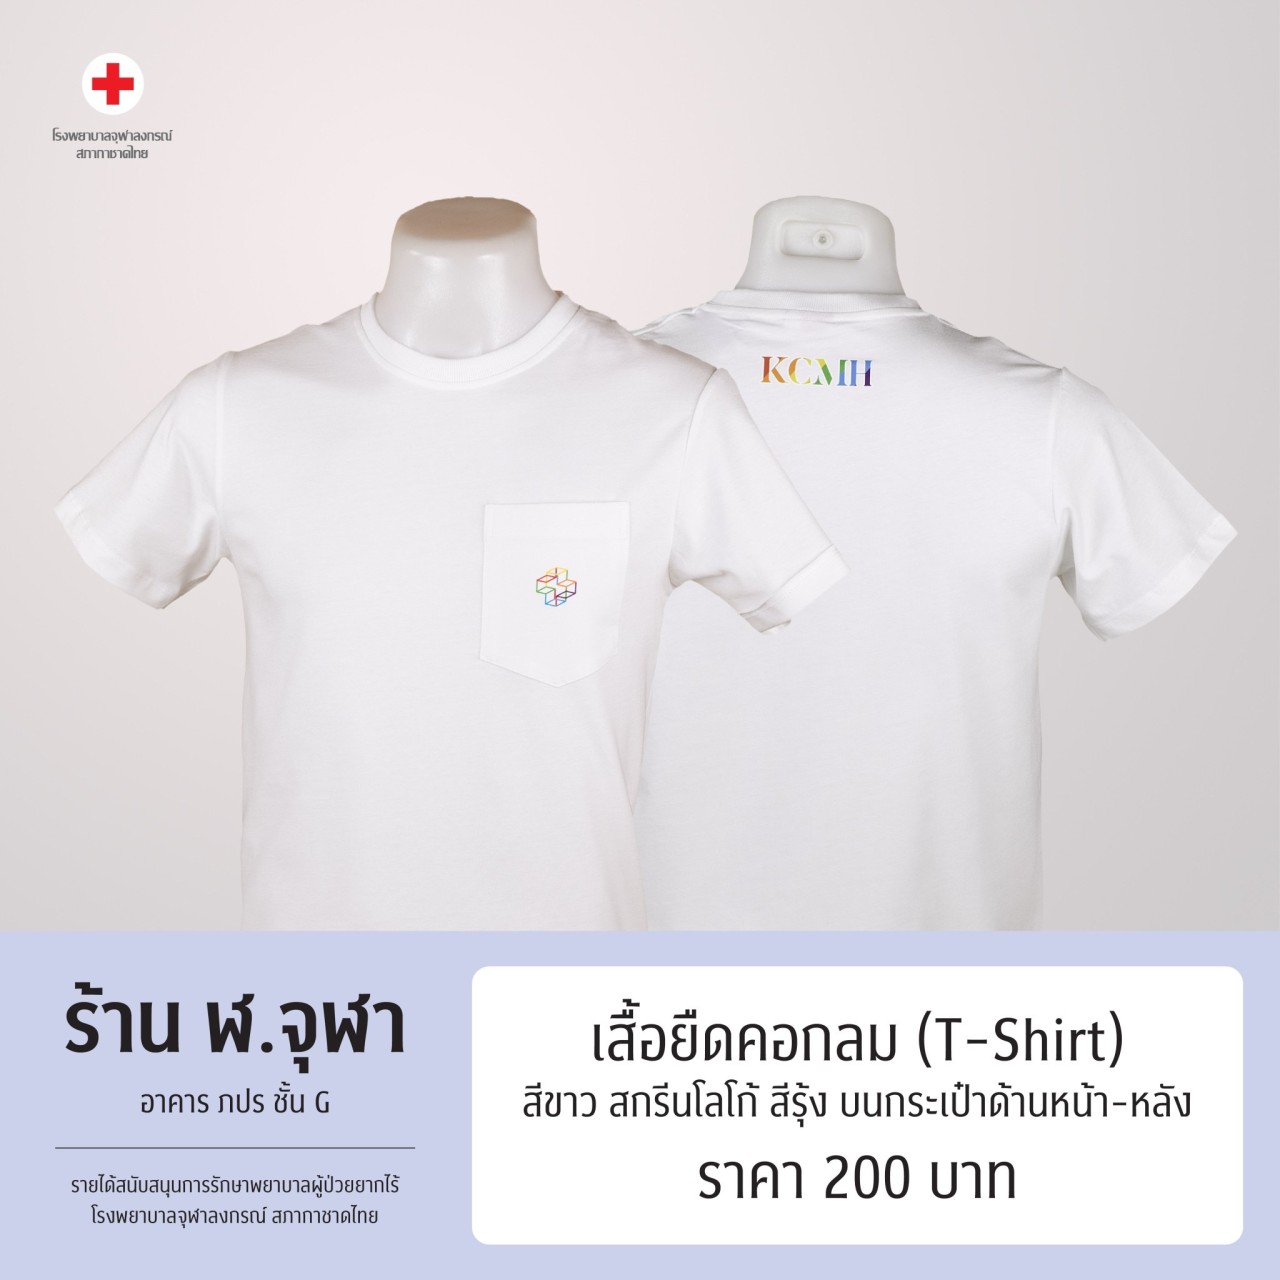 เสื้อยืดคอกลม (T-Shirt) สีขาว ด้านหน้าสกรีนโลโก้เครื่องหมายกากบาทสามมิติสีรุ้ง และด้านหลังสกรีนตัวอักษร KCMH สีรุ้ง